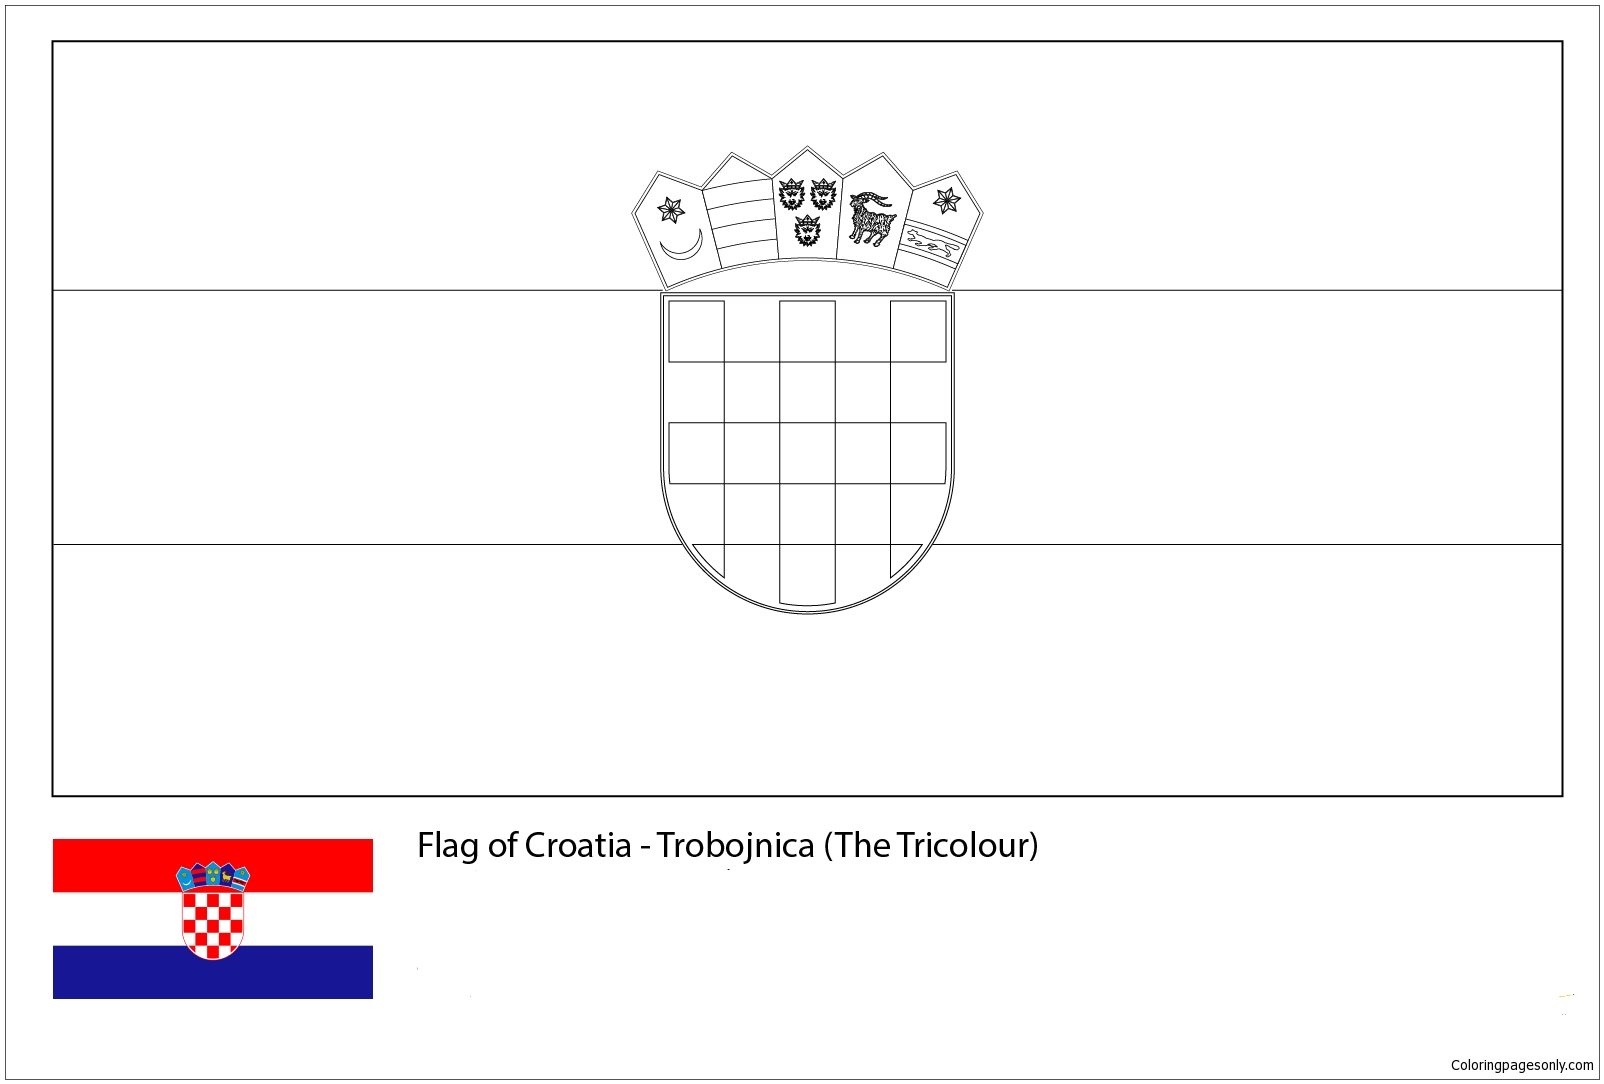 Bandeira da Croácia-Copa do Mundo 2018 from Bandeiras da Copa do Mundo 2018